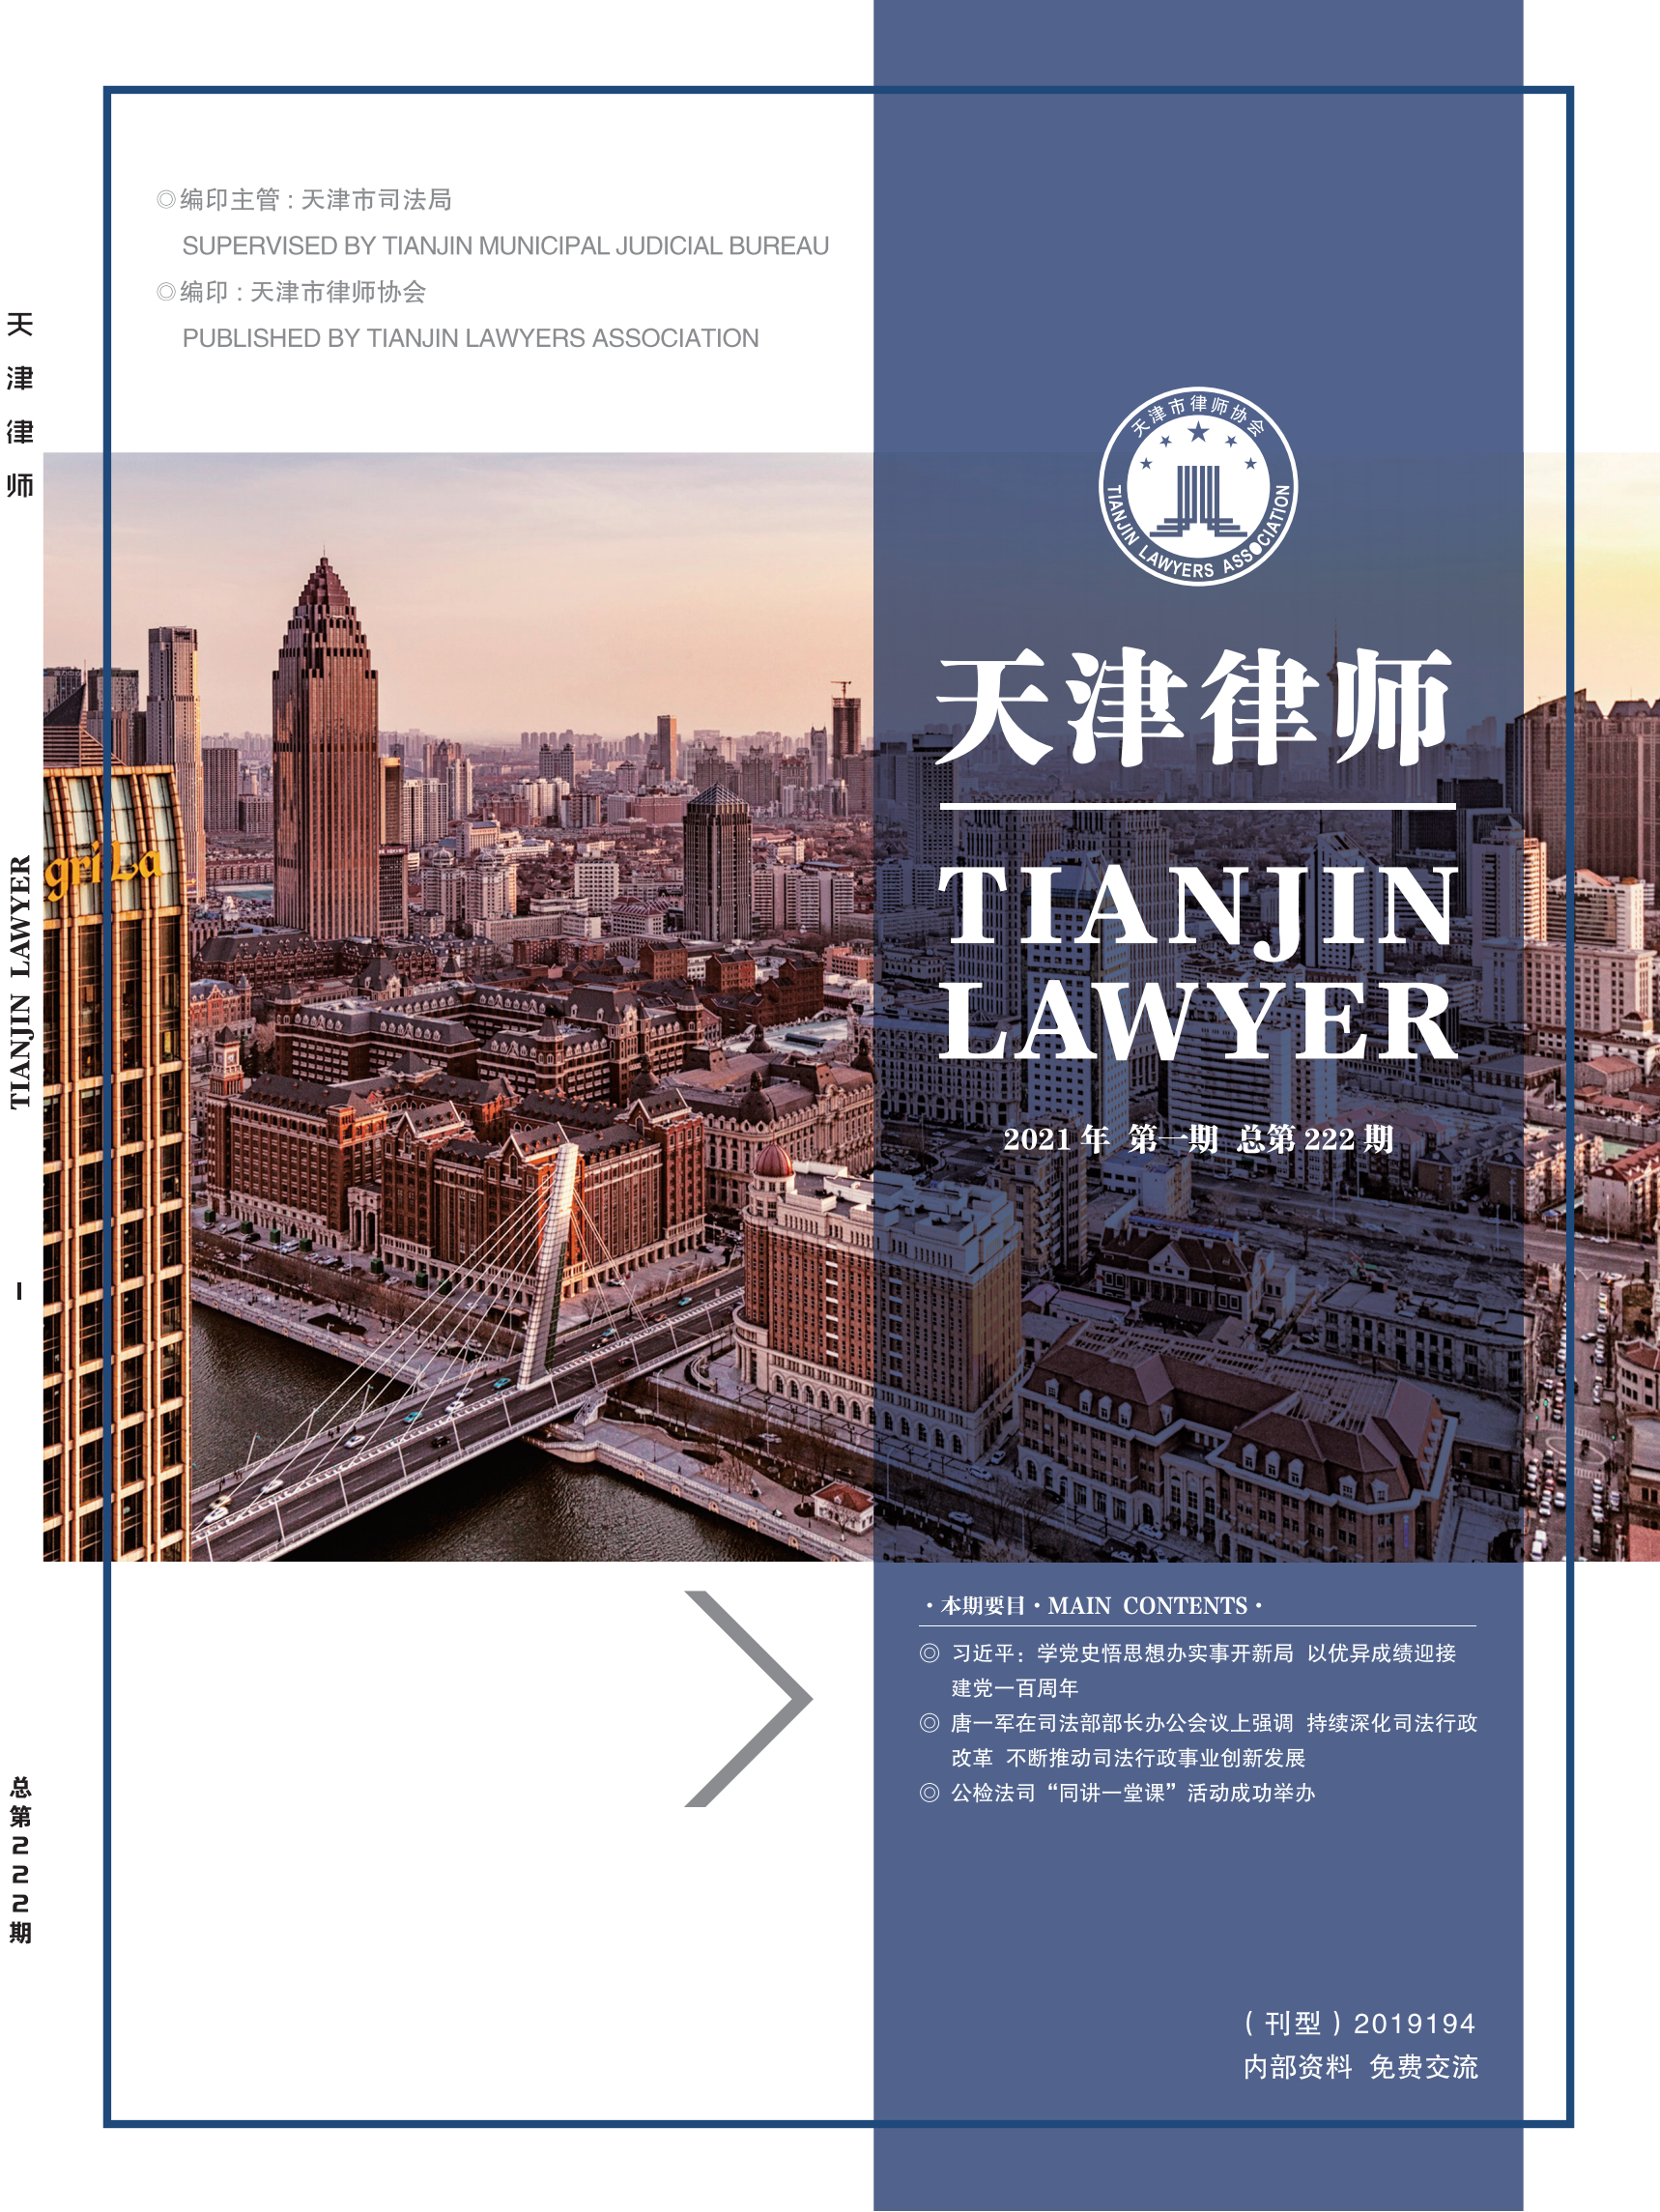 提取自2021年第一期天津律师杂志完整版_00.png